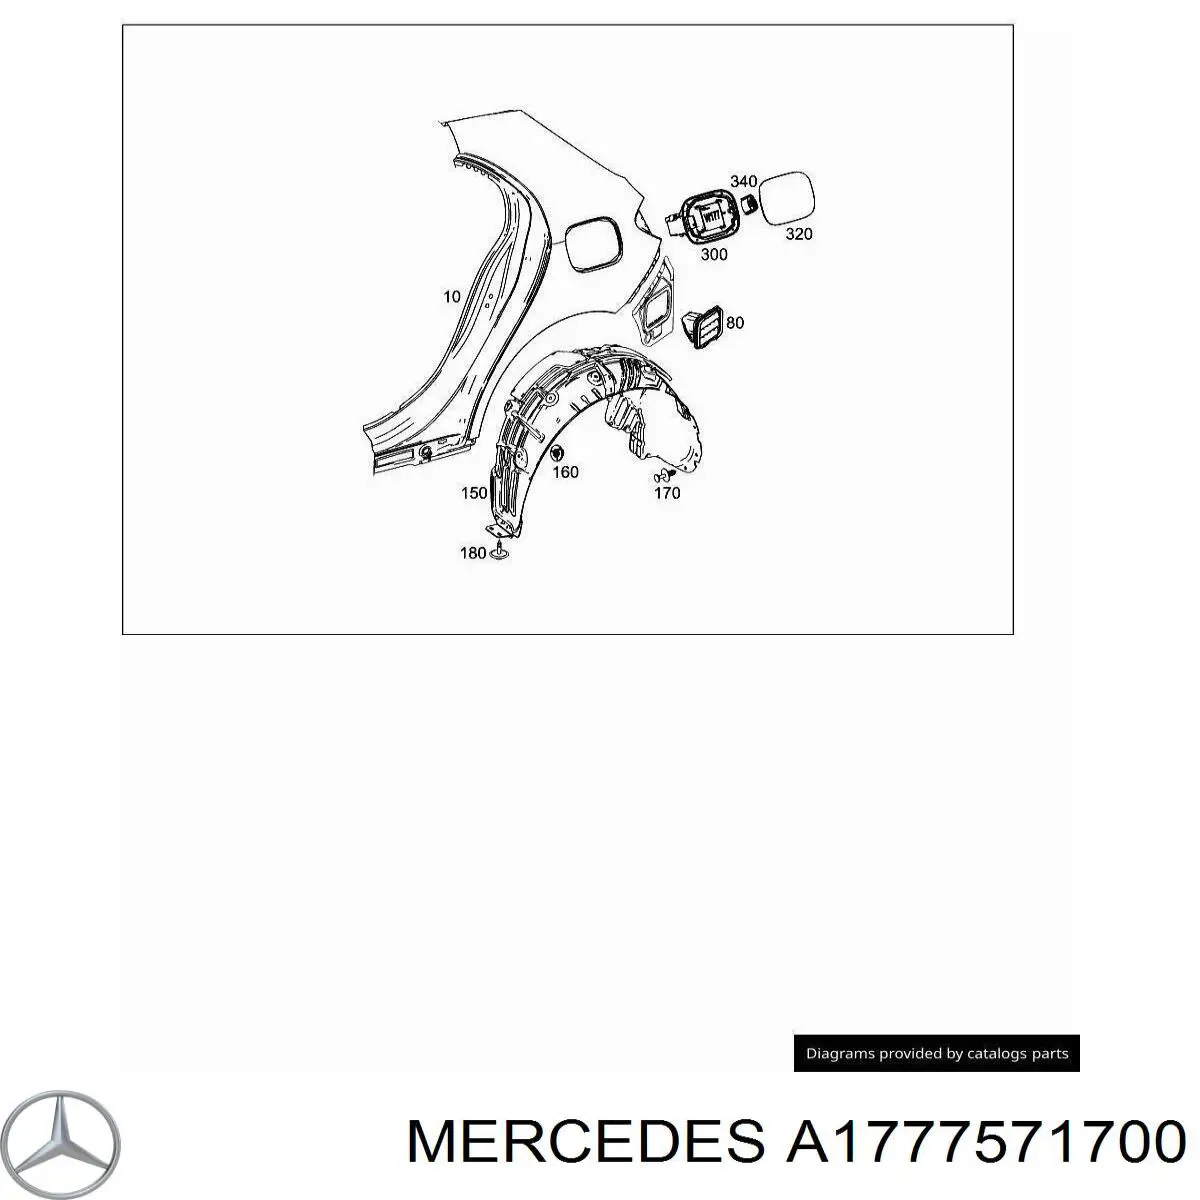 1777571700 Mercedes лючок бензобака (топливного бака)